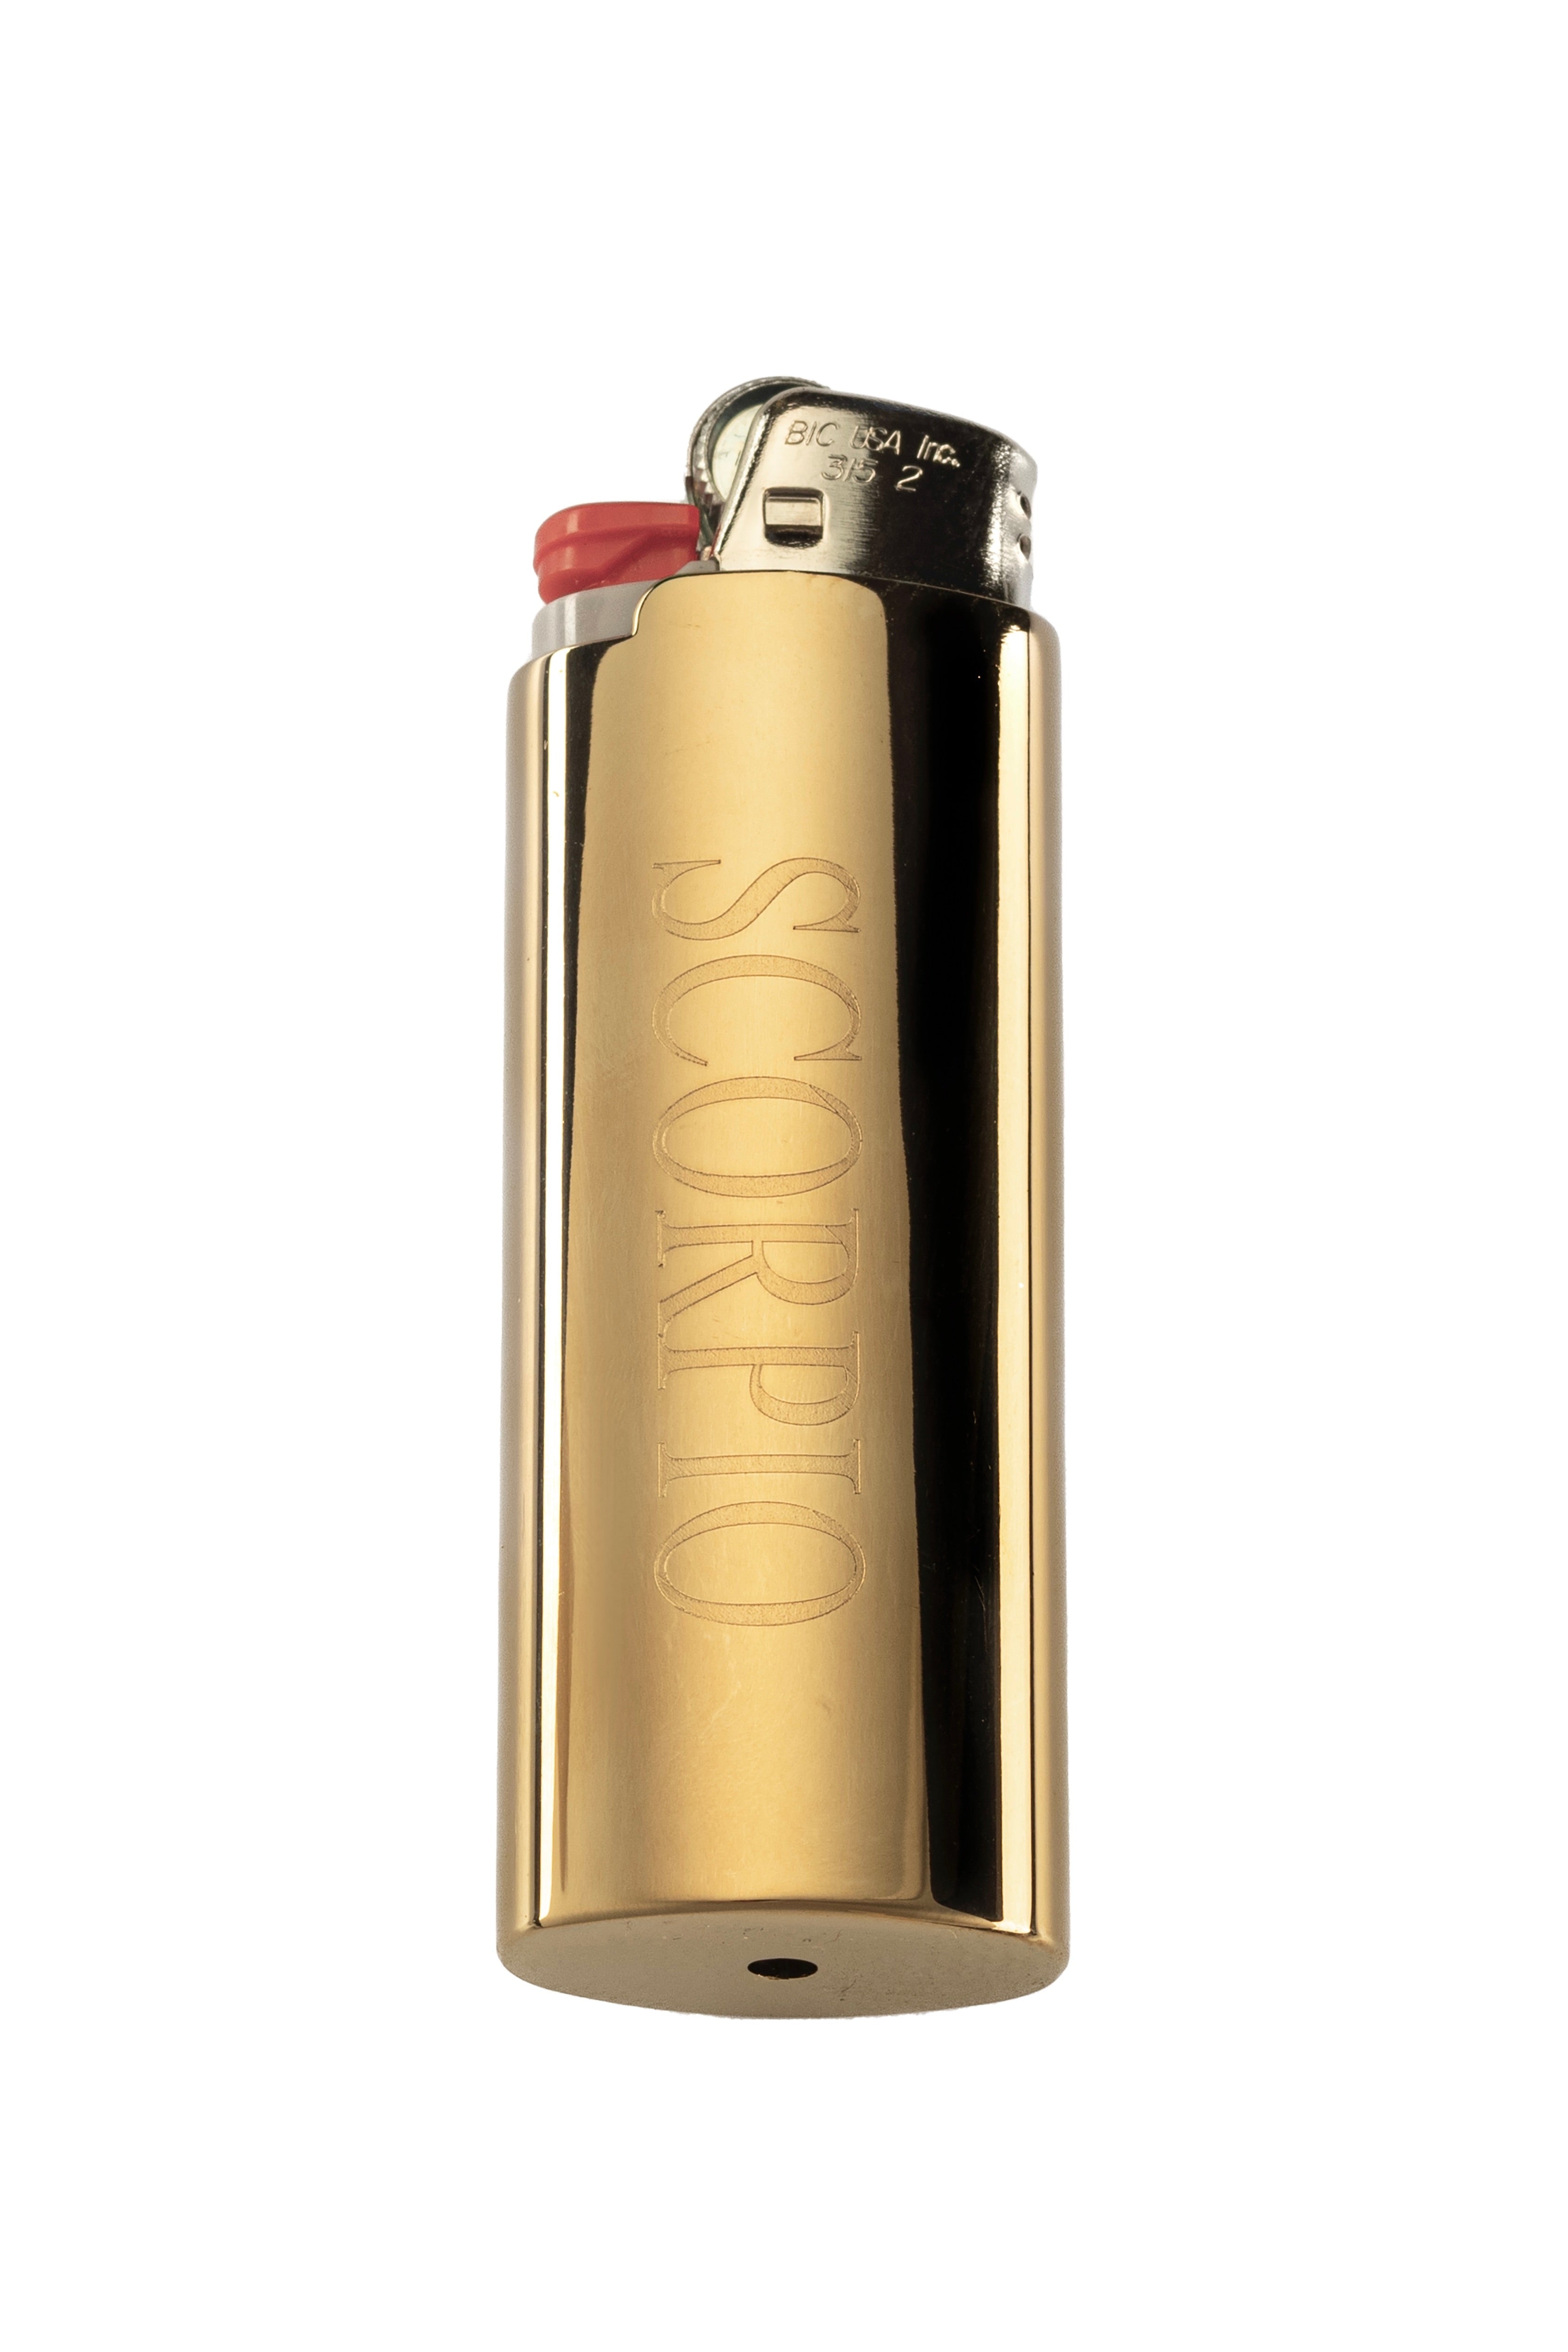 Zodiac Lighter Cases